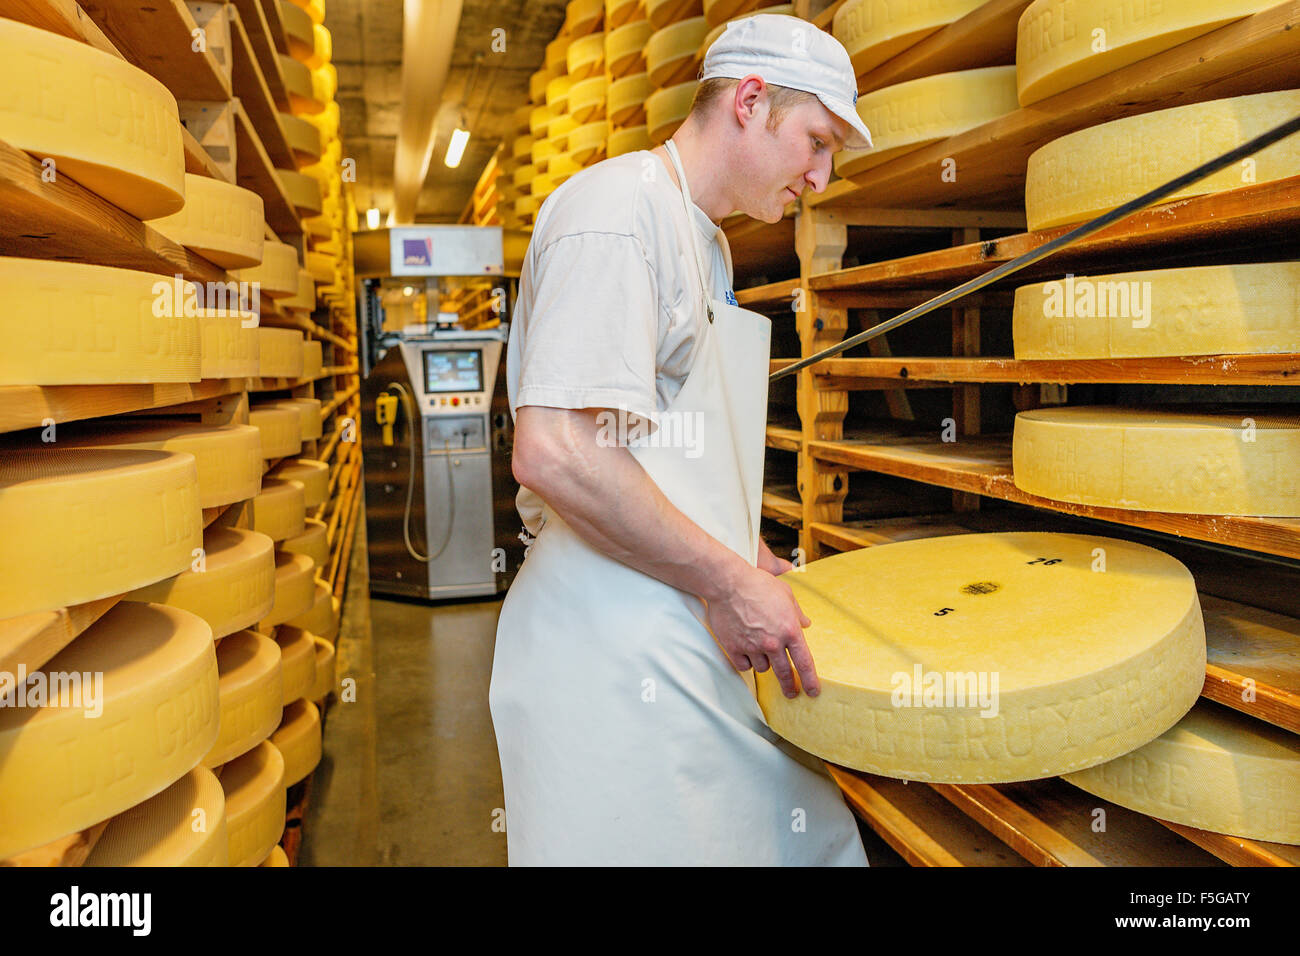 Roues de fromage mûri dans une cave à une fromagerie dans le village d'Echarlens. Gruyère, Suisse. Banque D'Images